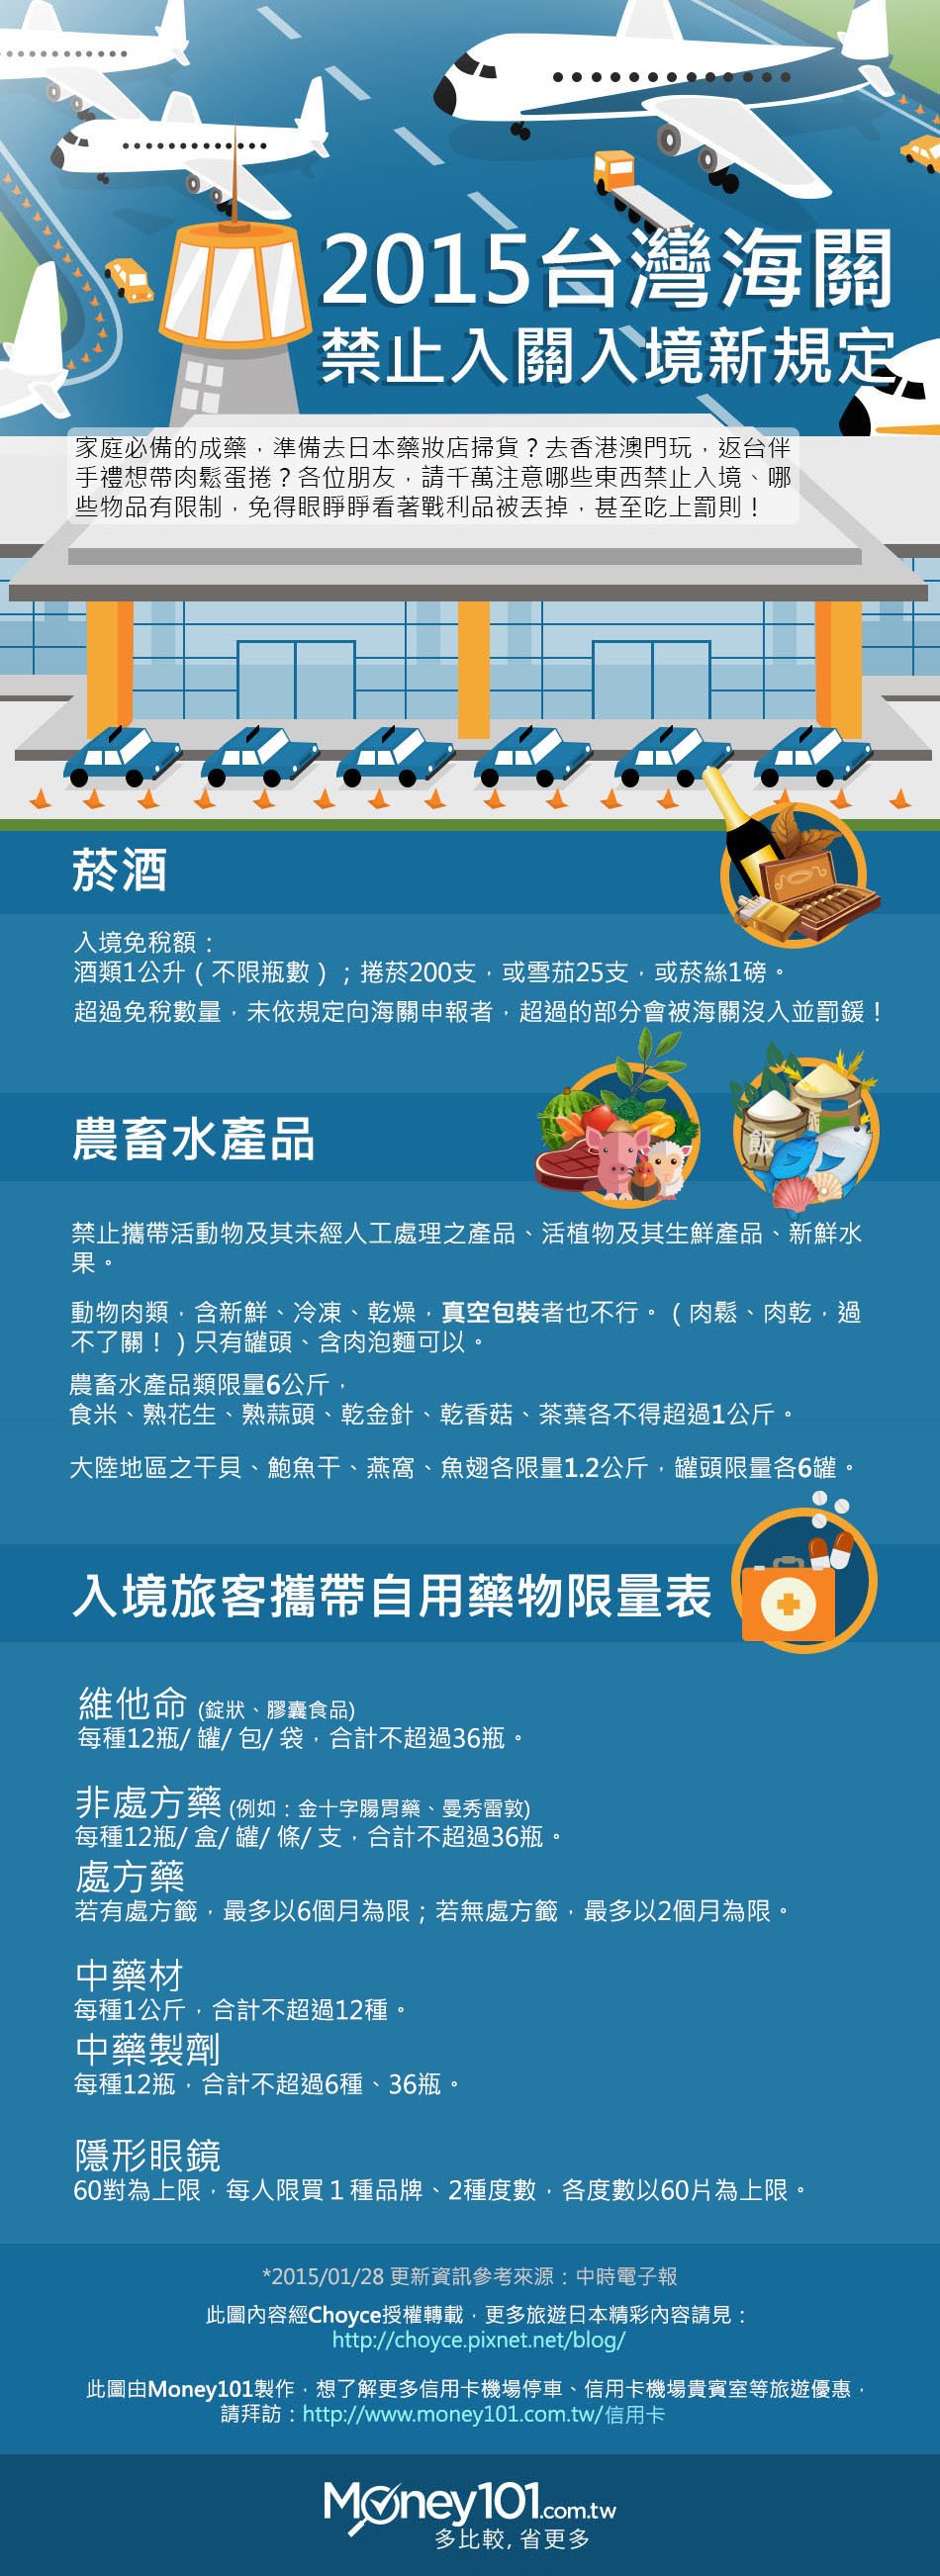 2015台灣海關規定-藥品藥物隱形眼鏡新規定